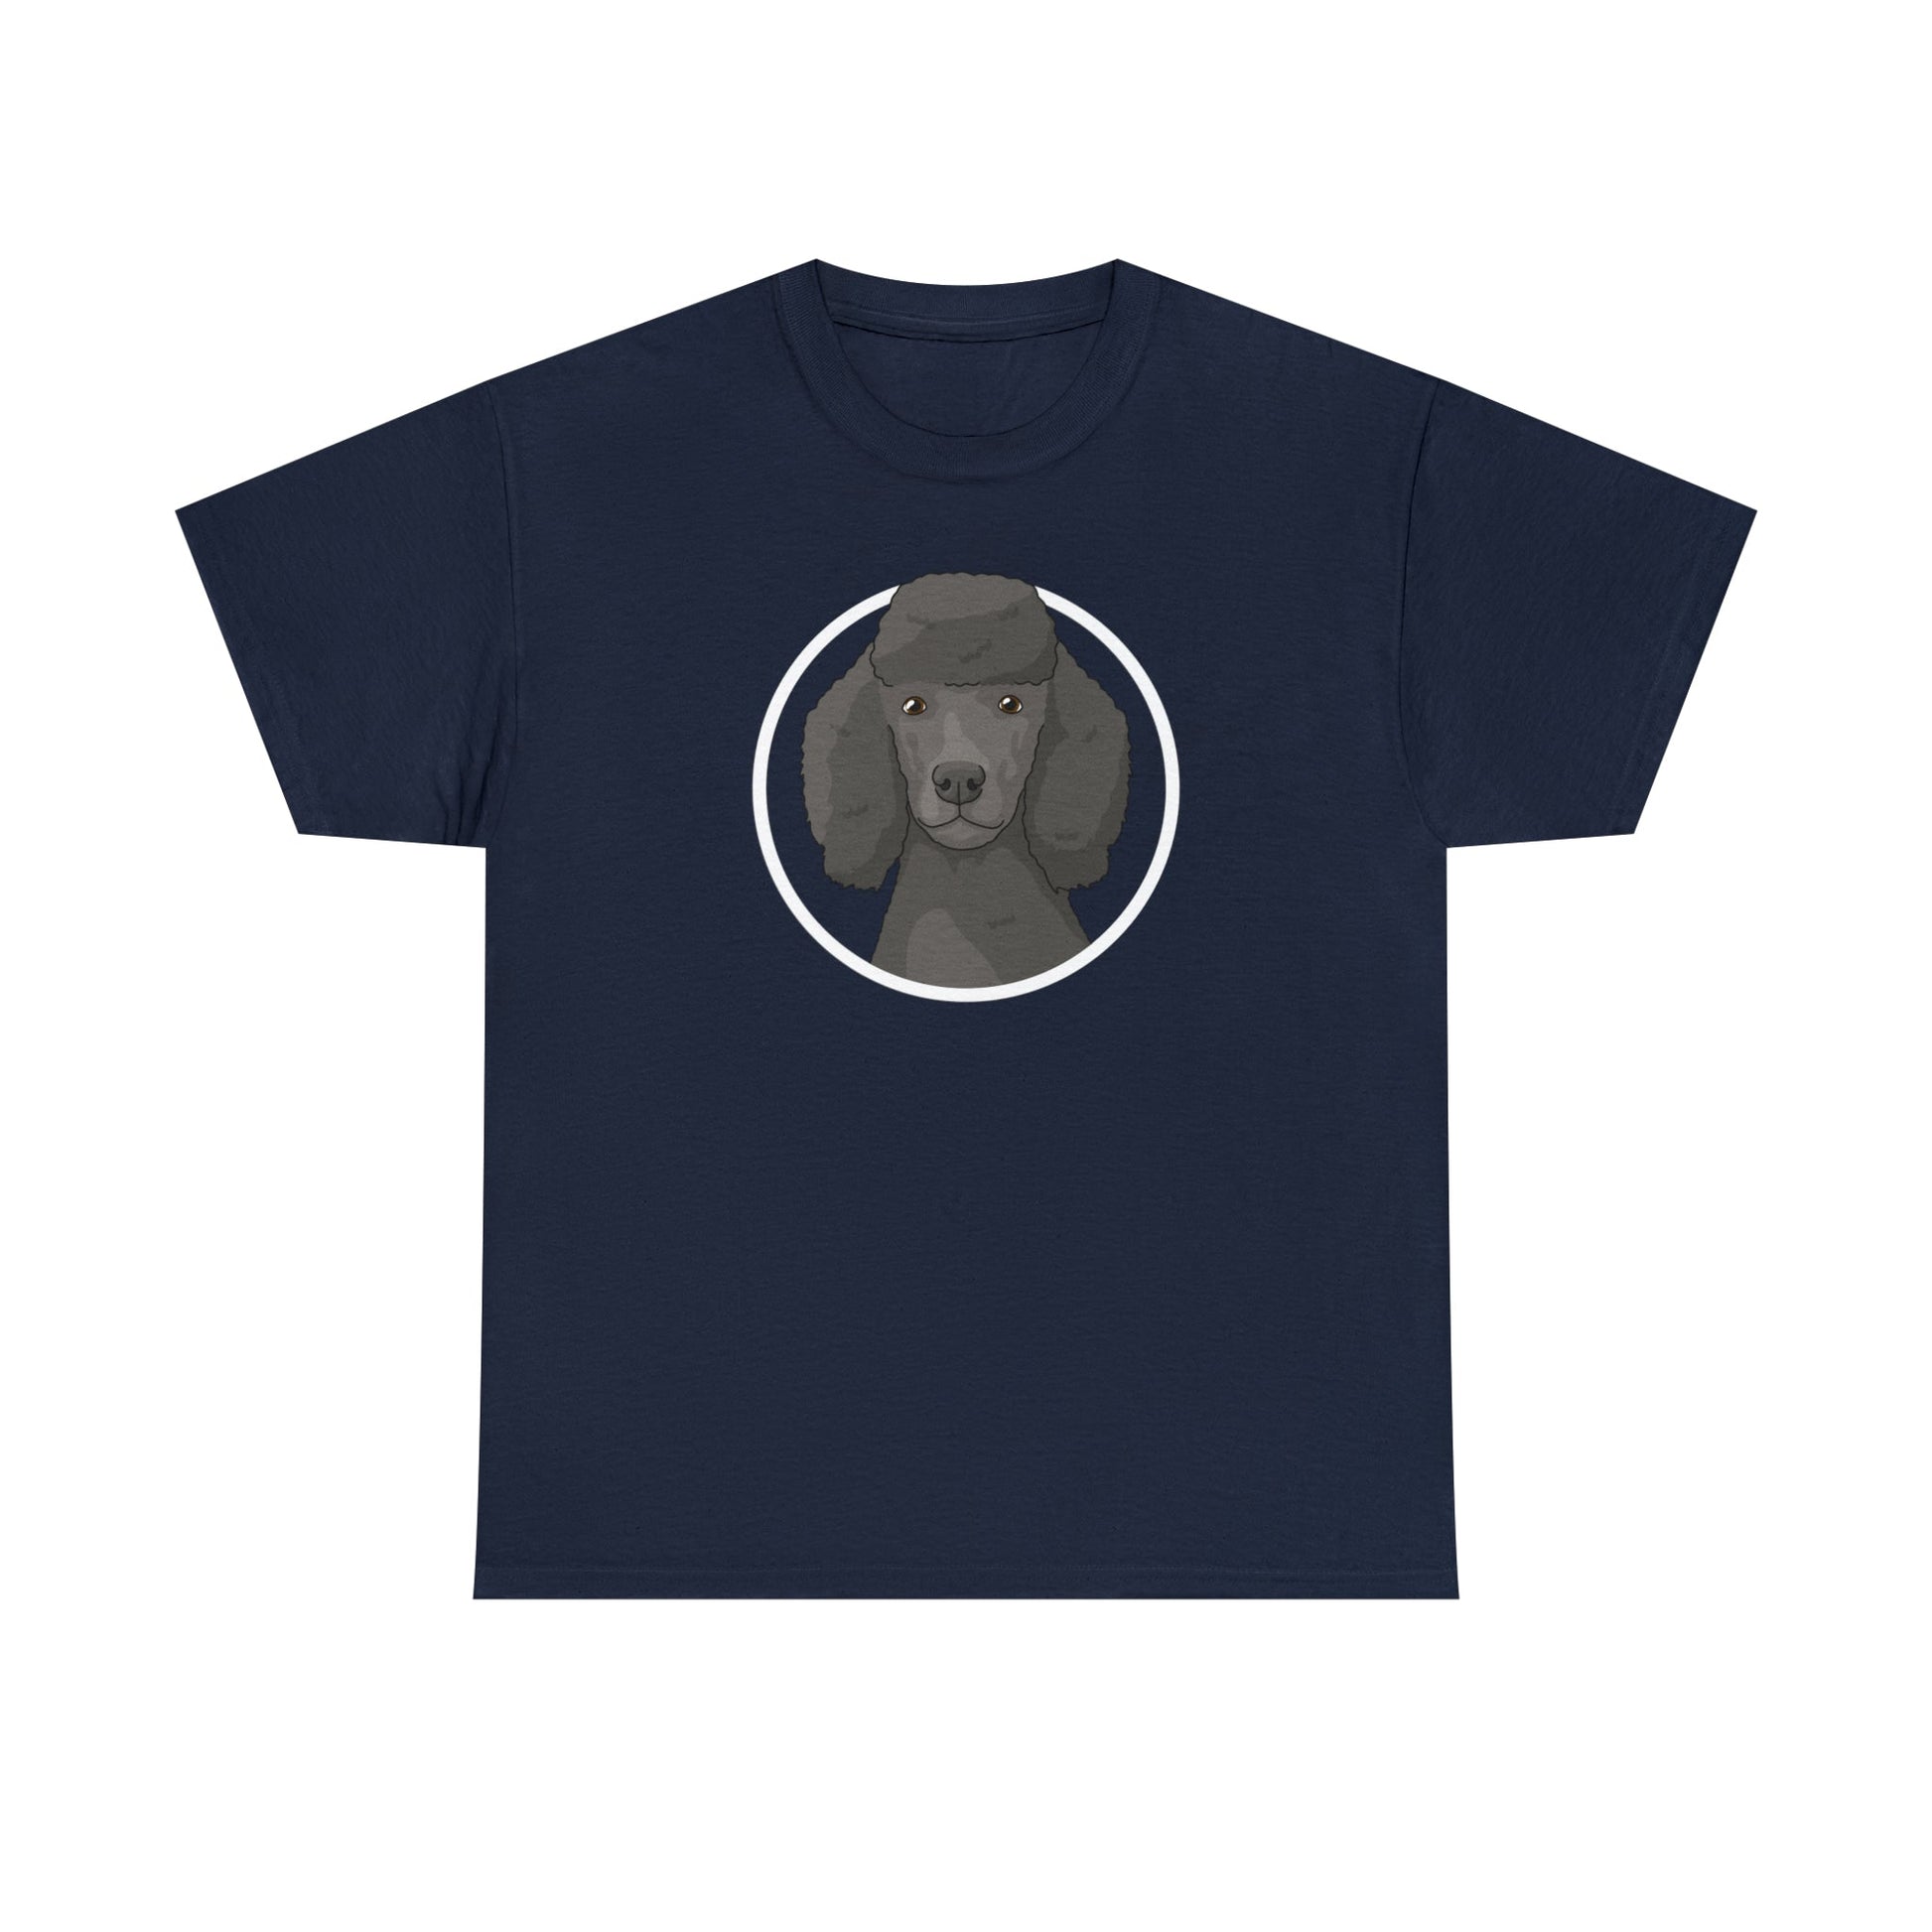 Poodle Circle | T-shirt - Detezi Designs-21675777339346447705